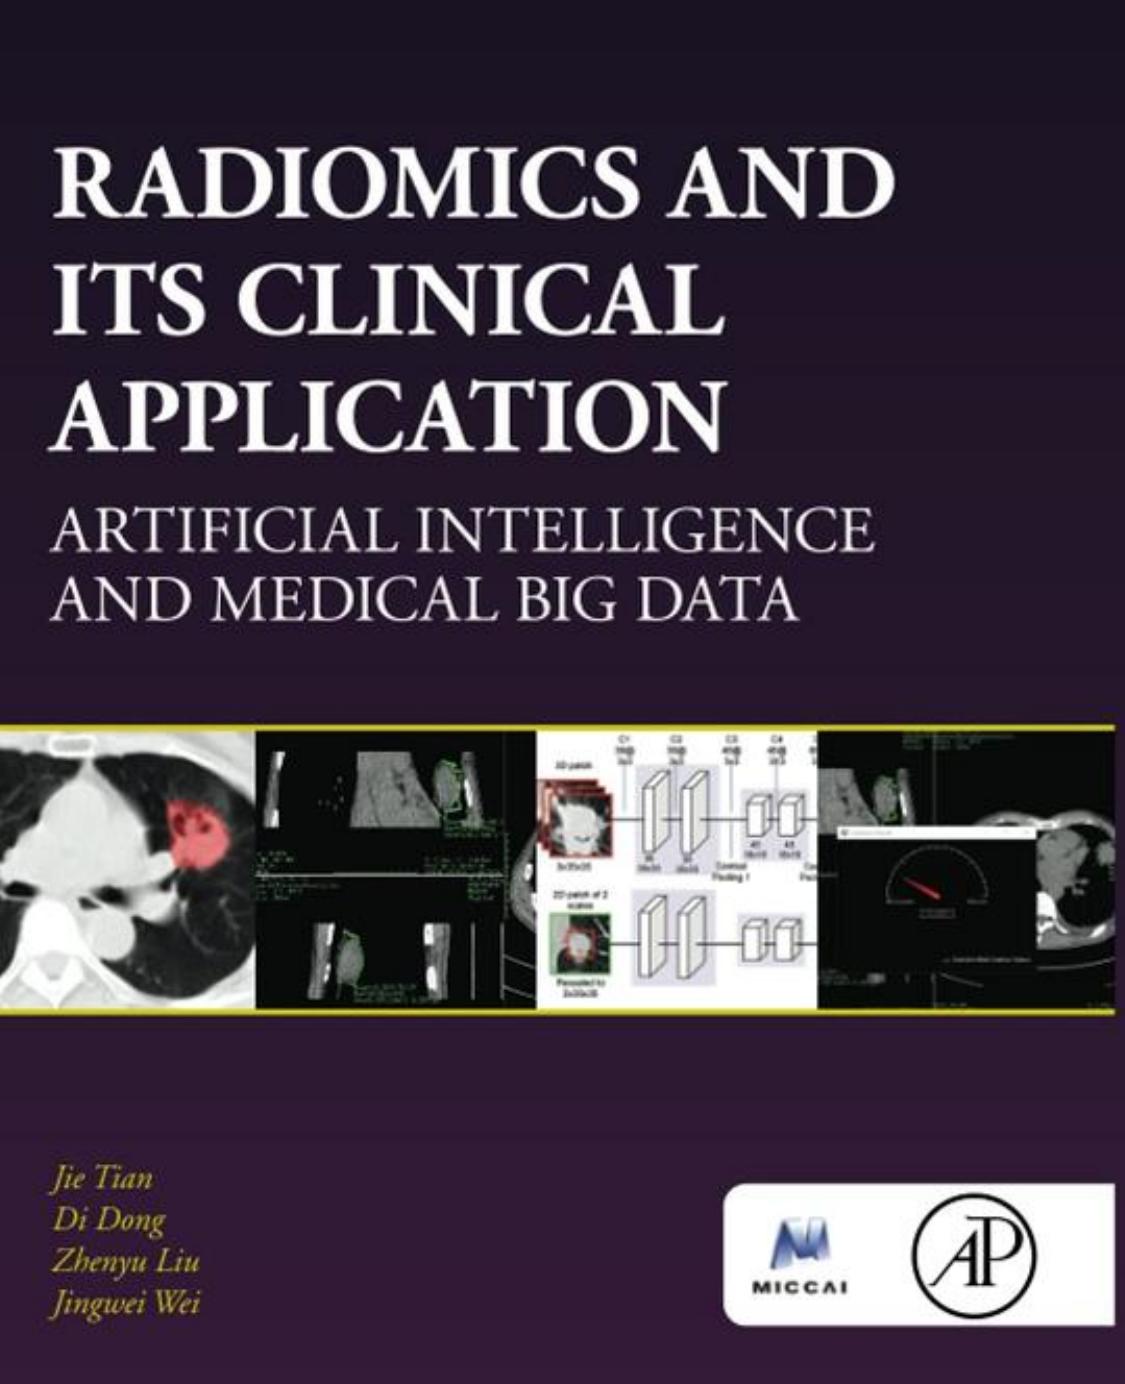 Radiomics and Its Clinical Application: Artificial Intelligence and Medical Big Data by Jie Tian Di Dong Zhenyu Liu Jingwei Wei